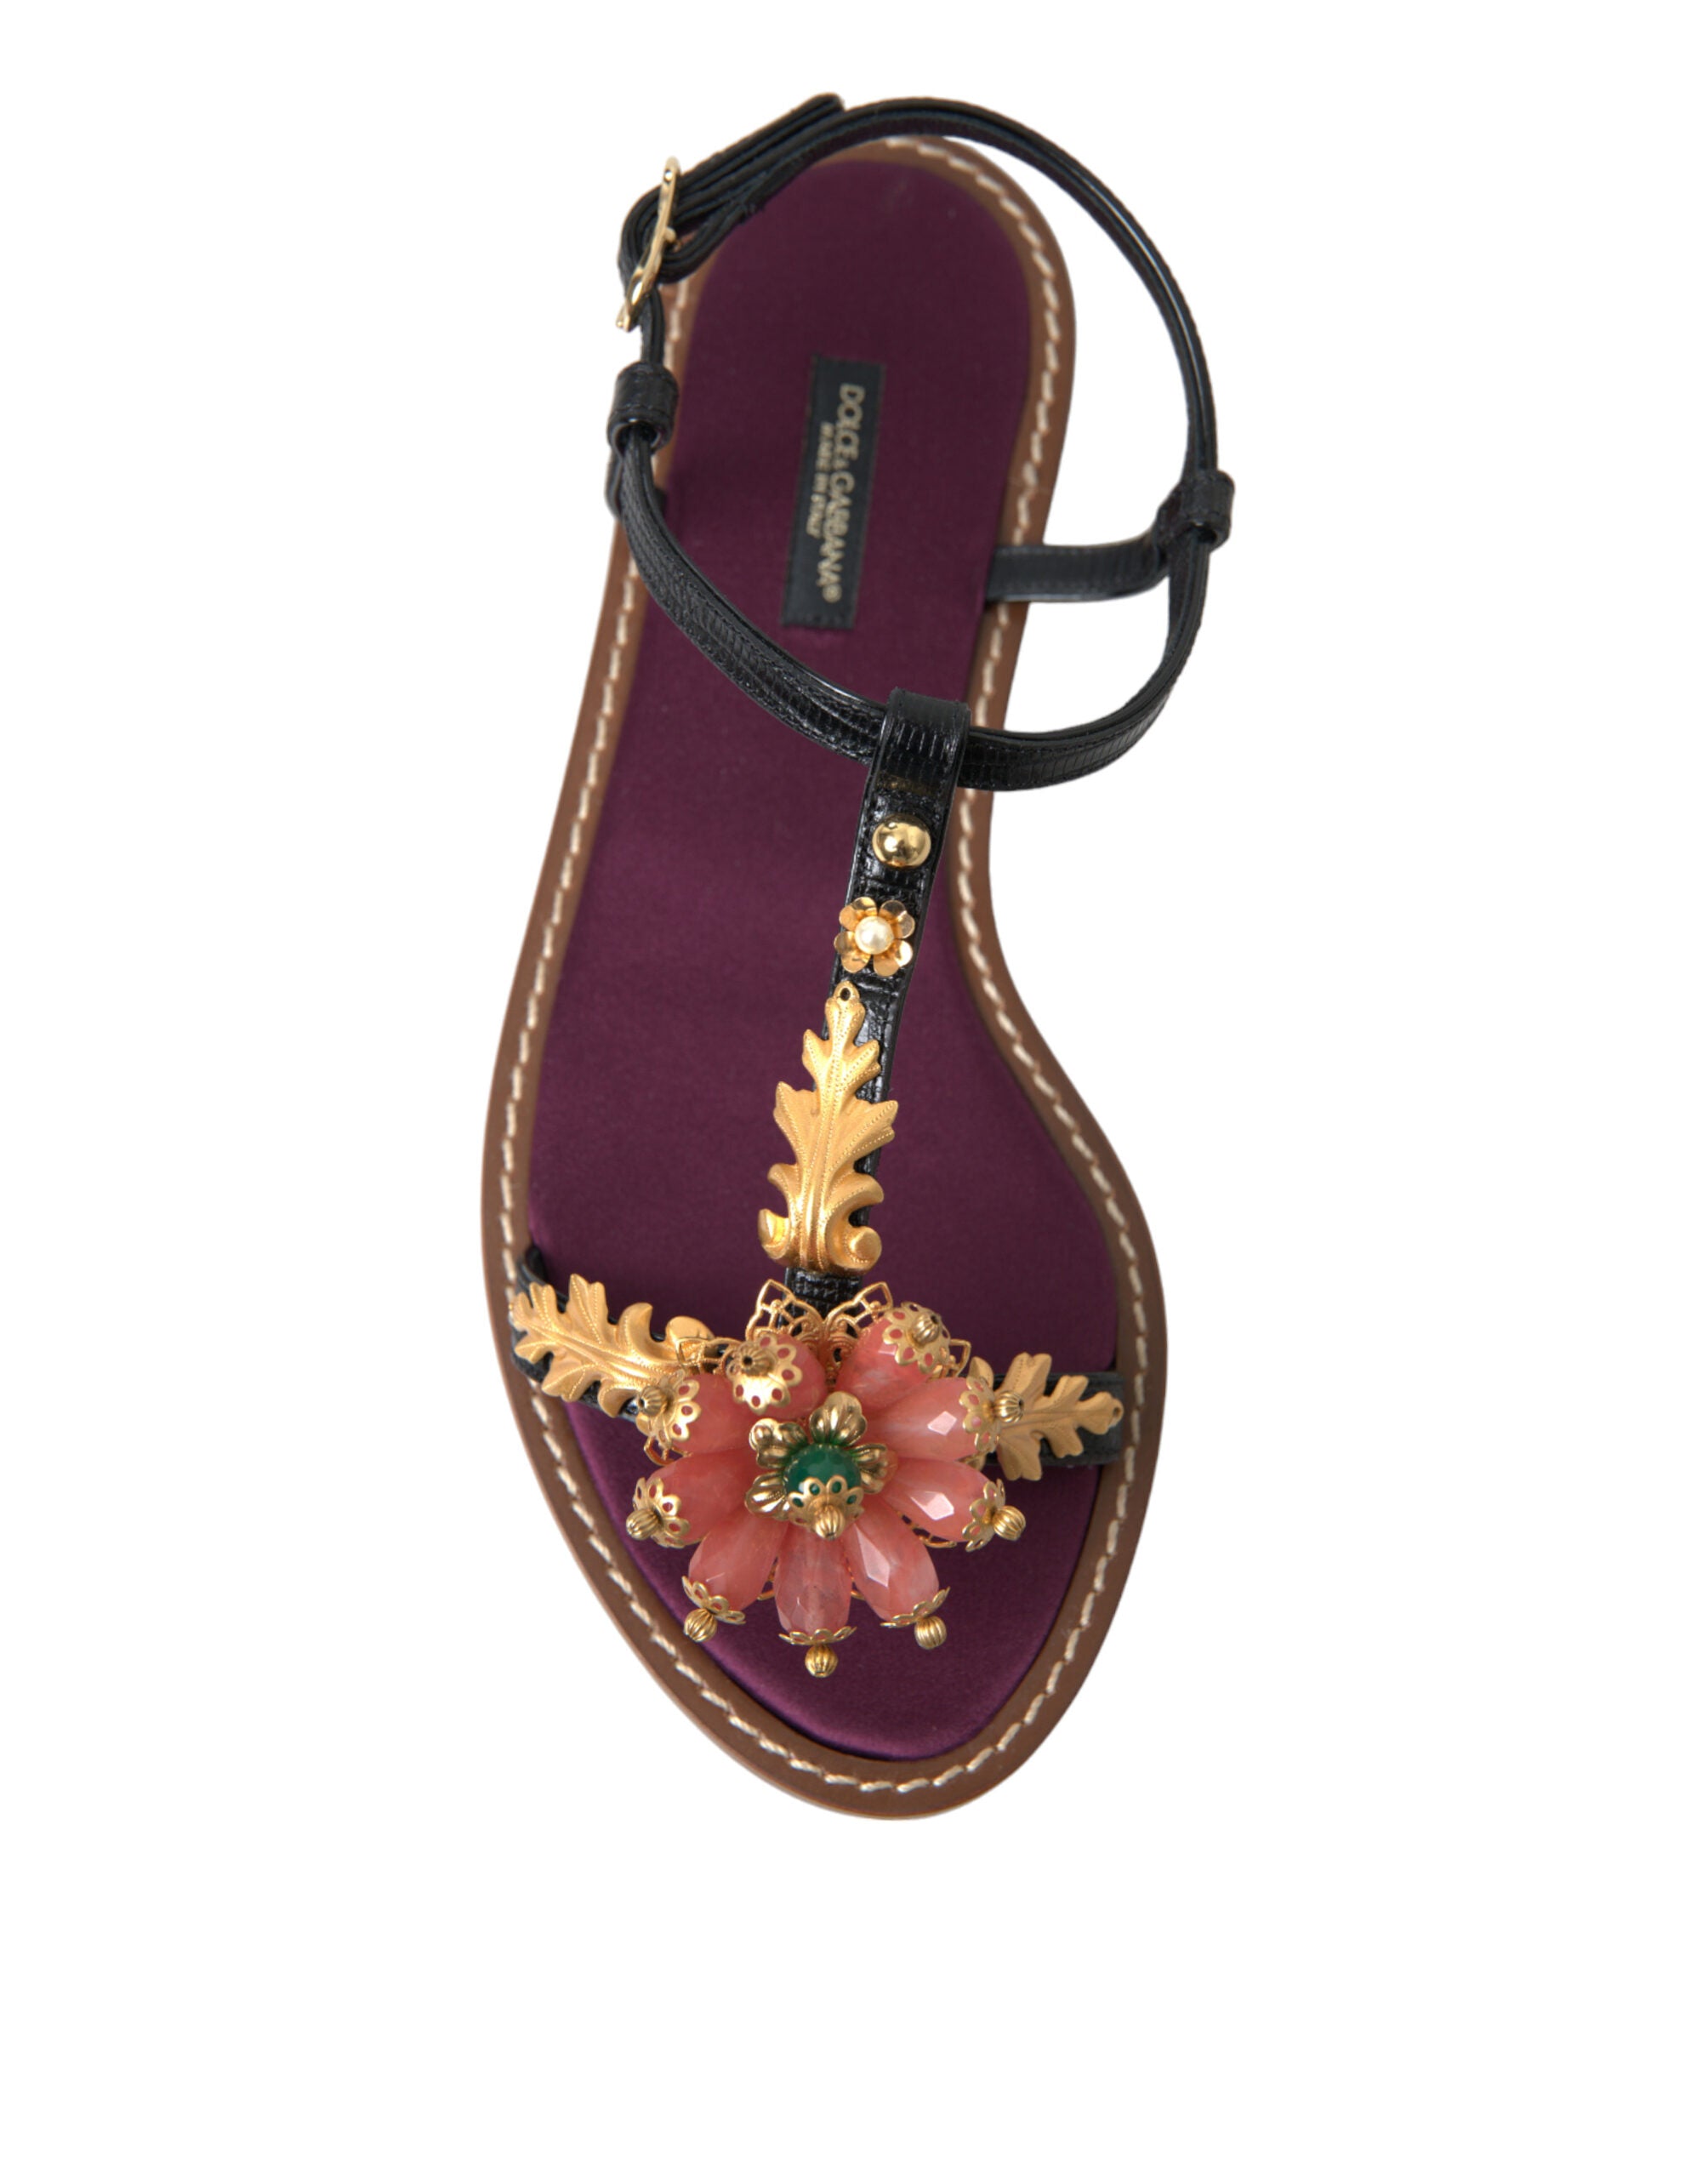 Dolce & Gabbana Elegant Crystal-Adorned Flat Sandals